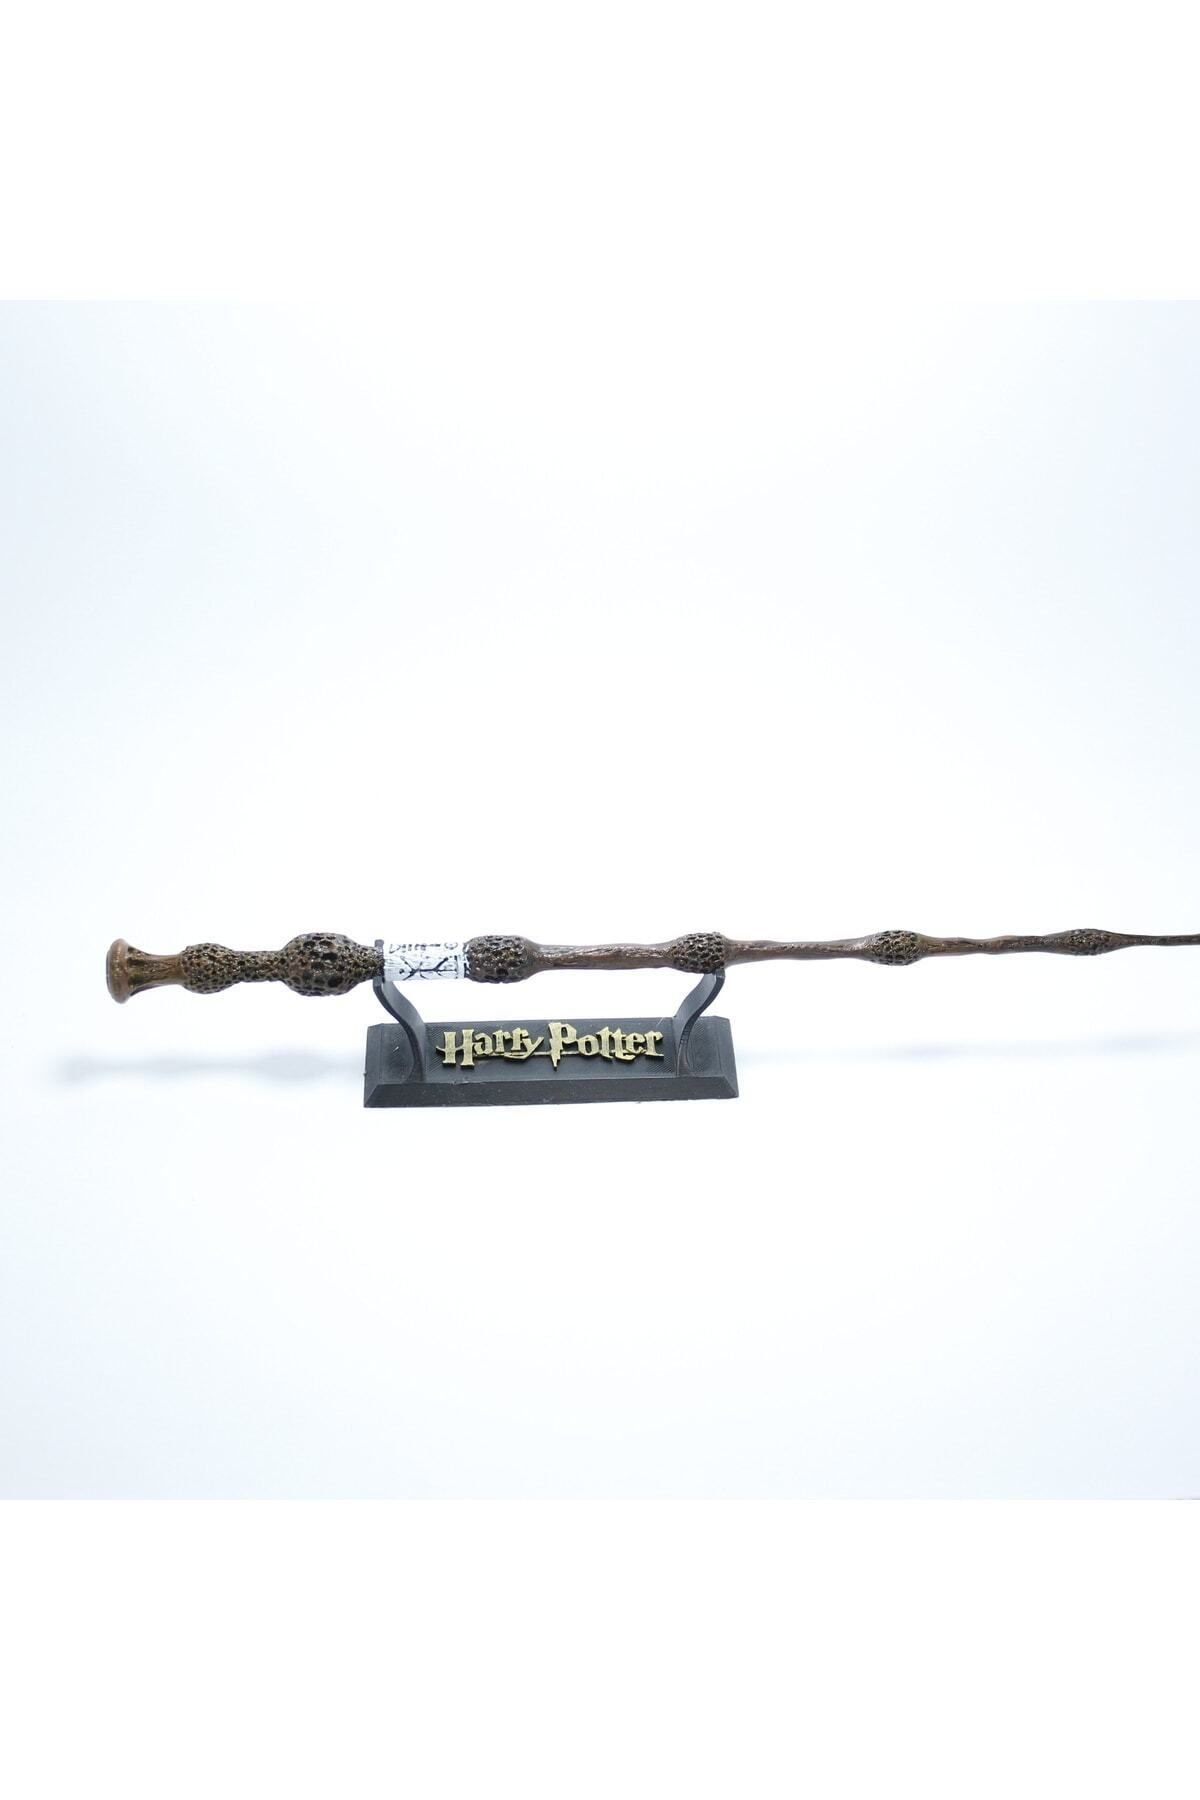 babilsanat Dumbledore Asası Harry Potter Filmi Karakter Asası (MÜRVER ASA) 34 Cm (STAND HEDİYELİ)